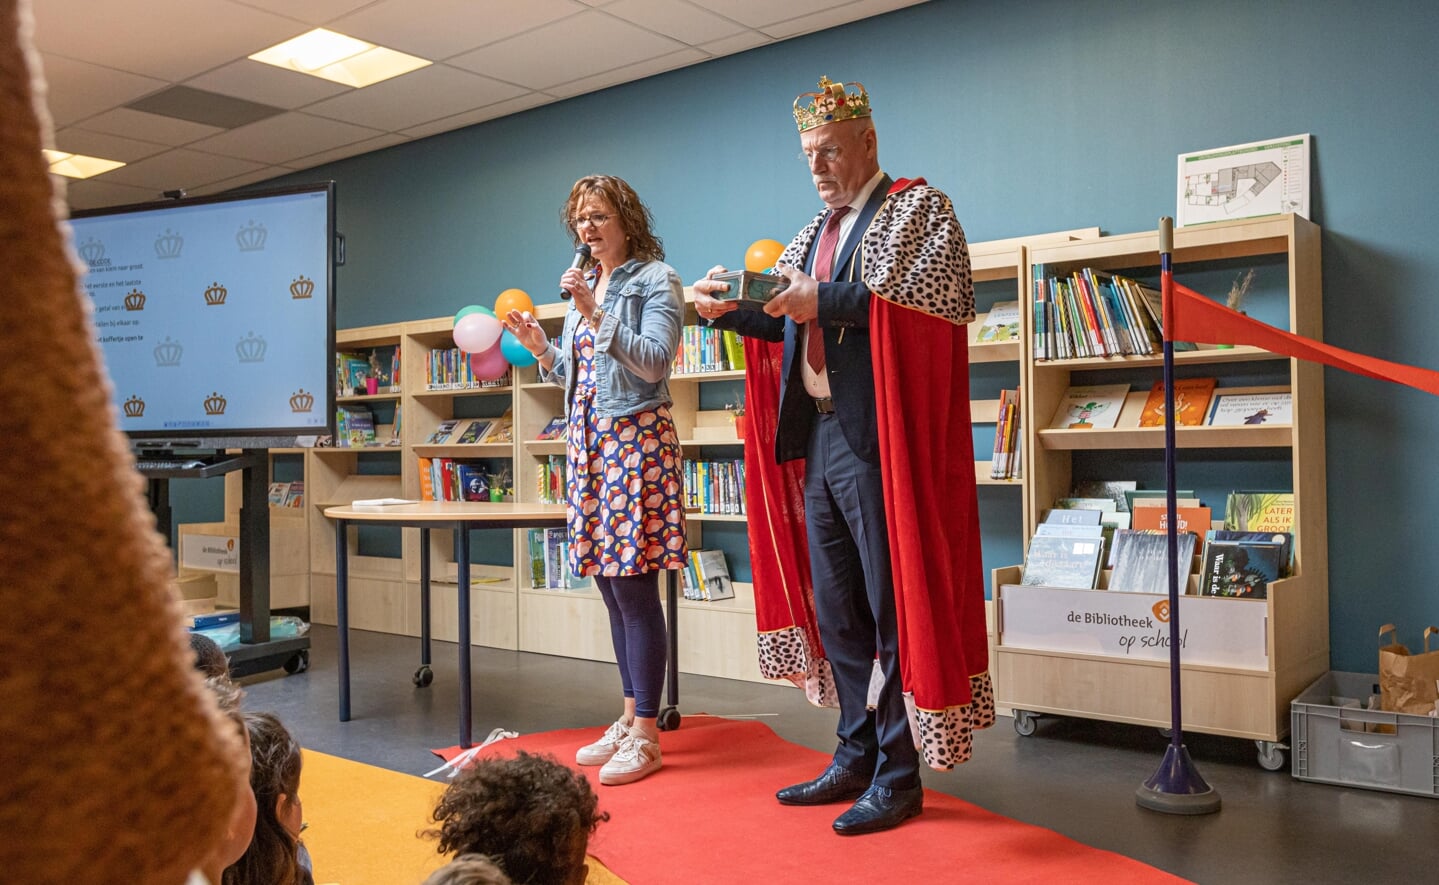 Niemand minder dan 'koning' Alexander Willem (natuurlijk niet de echte) opende dinsdagmiddag de nieuwe bibliotheek van de Prinses Amaliaschool. Docent Anke van Dijk (links) is de initiator van het boekenpunt op de basisschool.